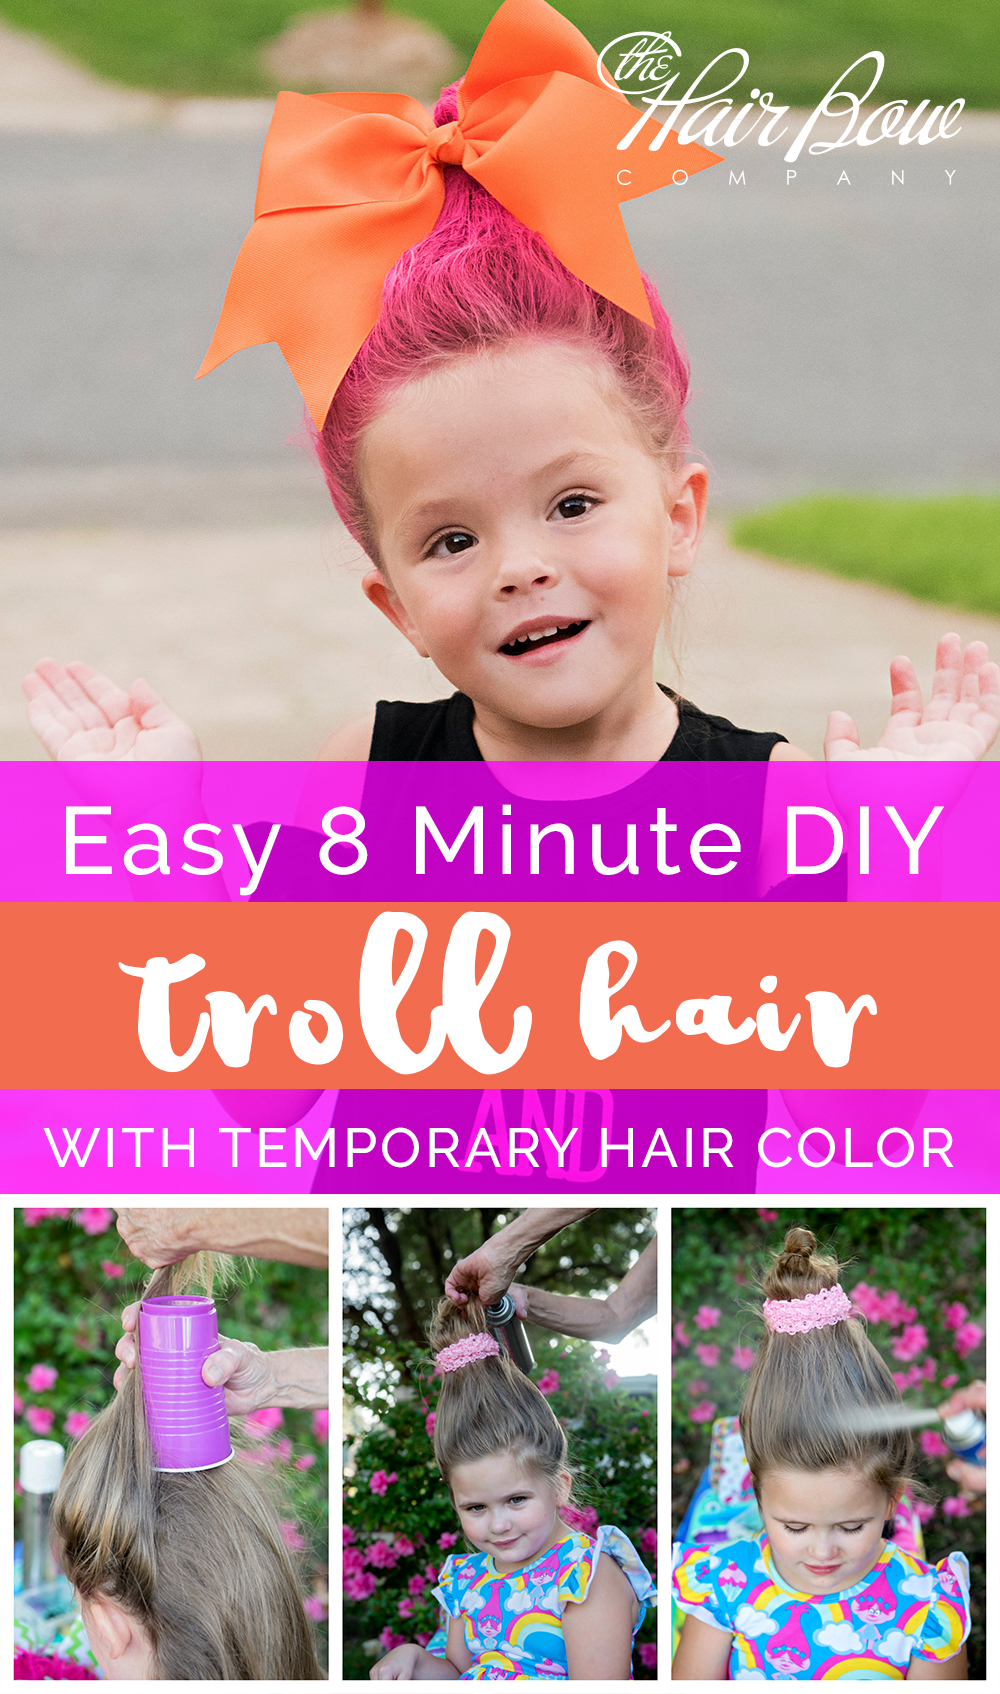 Easy DIY Troll Hair Style Tutorial by The Hair Bow Company